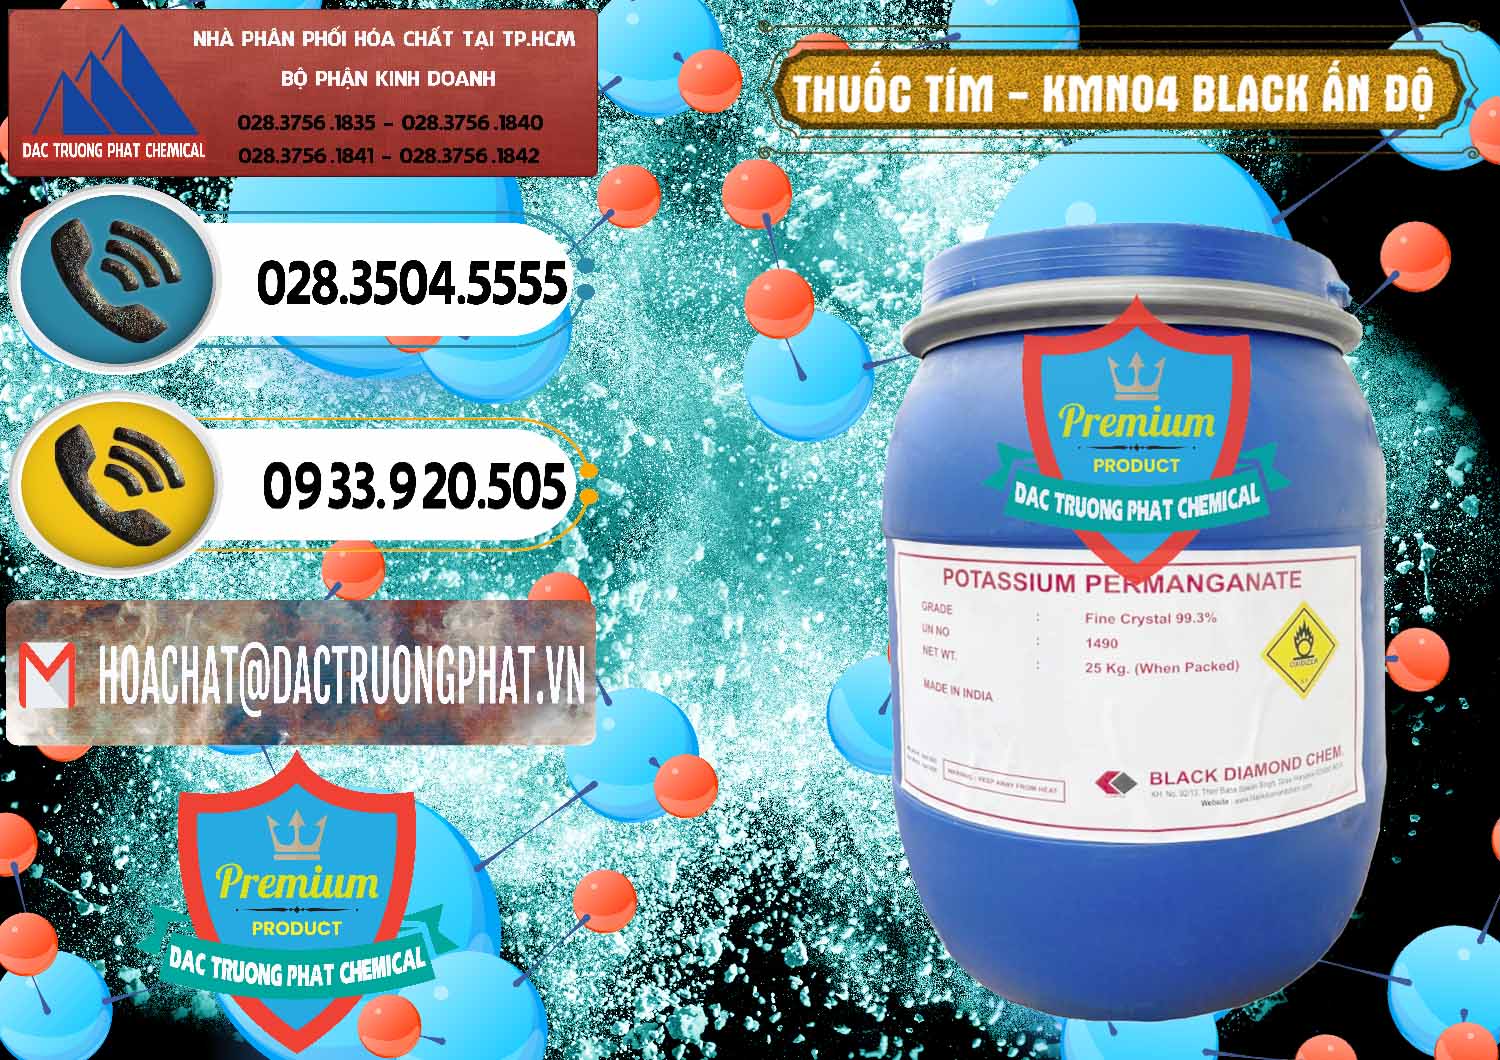 Cung ứng và bán Thuốc Tím - KMNO4 Black Diamond Ấn Độ India - 0414 - Công ty chuyên cung ứng - phân phối hóa chất tại TP.HCM - hoachatdetnhuom.vn